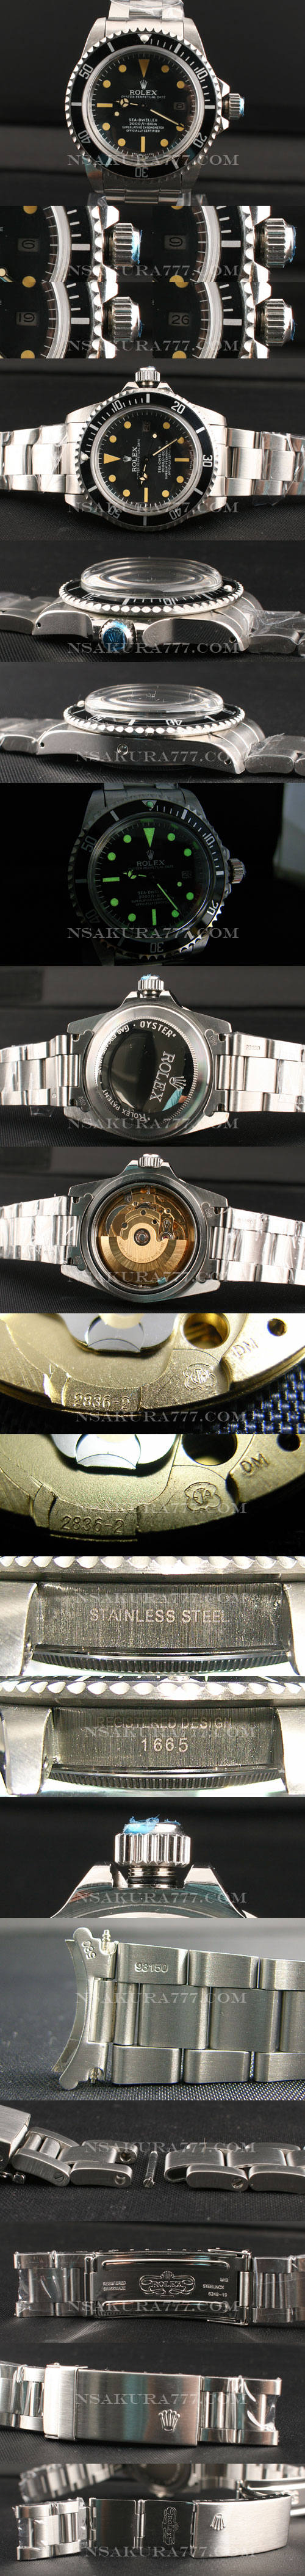 レプリカ時計ロレックス 1665シードウェラー初期モデル2836搭載 - ウインドウを閉じる